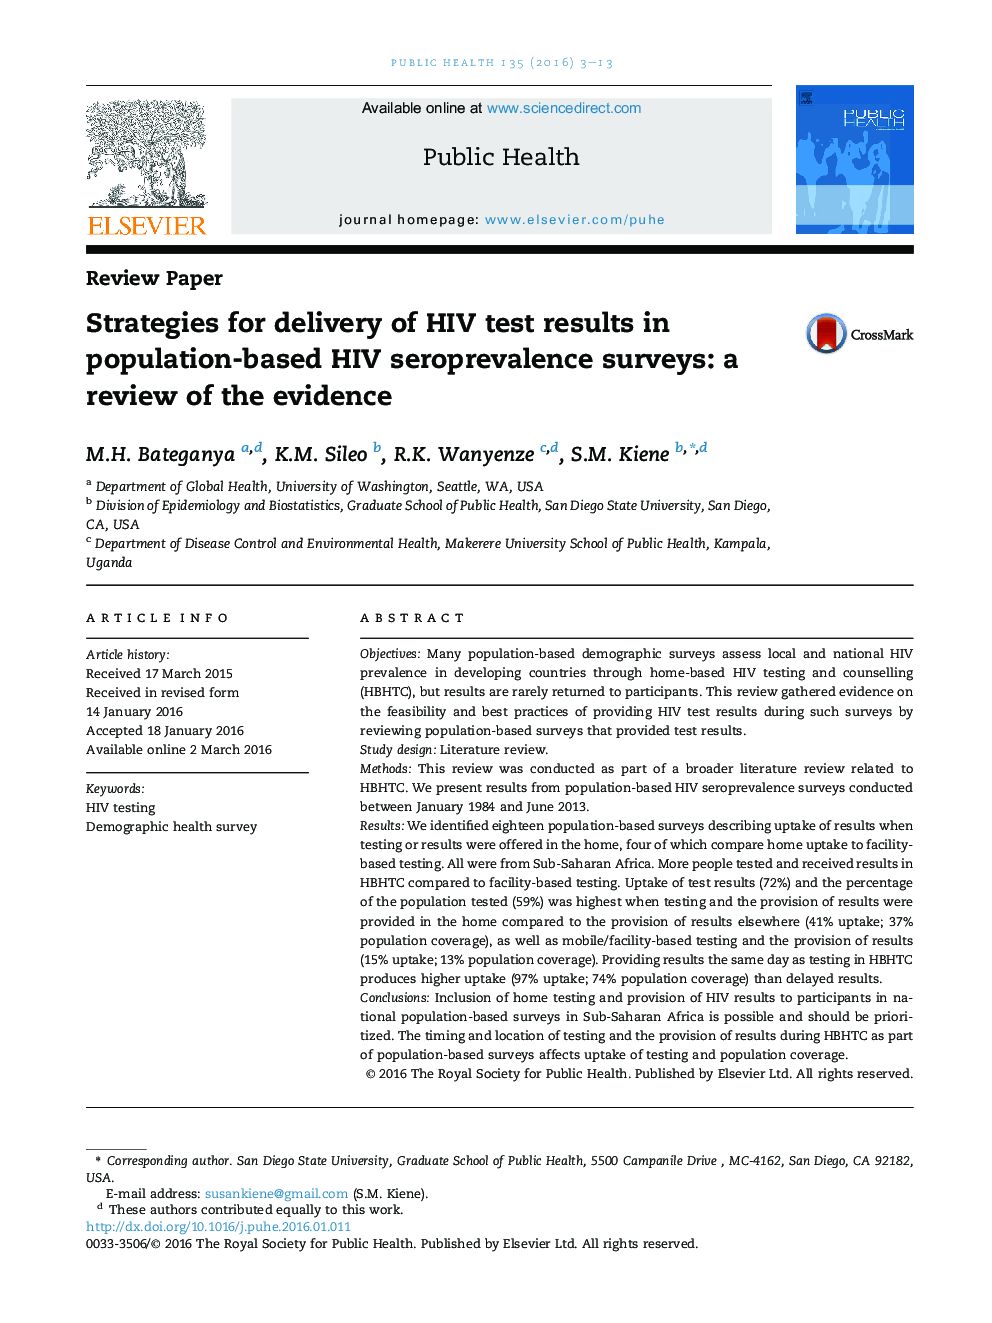 استراتژی برای رسیدن به نتایج آزمایش HIV در بررسی شیوع سرمی HIV مبتنی بر جمعیت: یک بررسی از شواهد